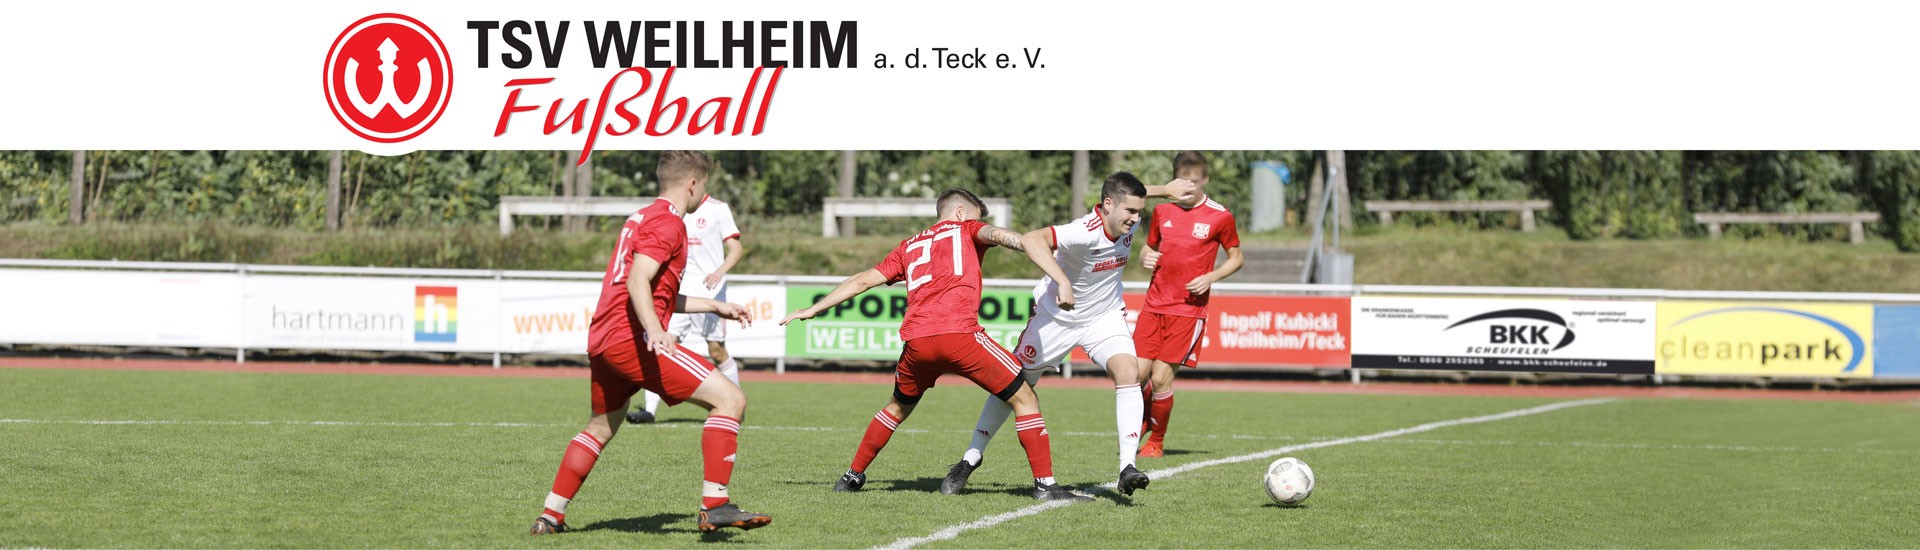 TSV Weilheim an der Teck e.V.